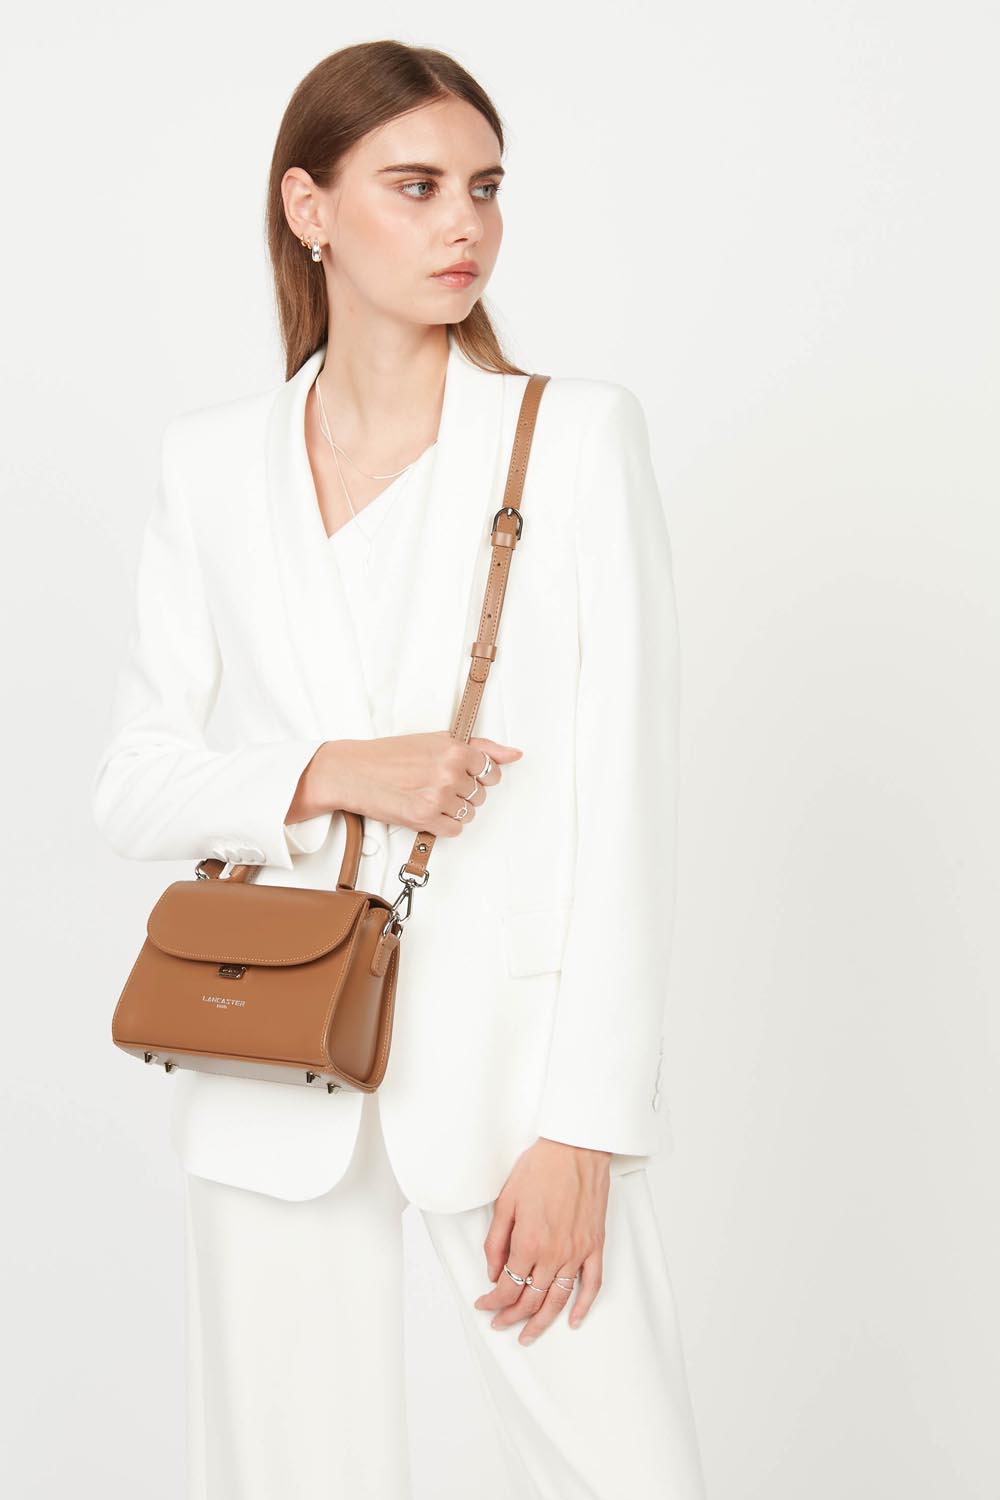 small handbag - suave even #couleur_camel